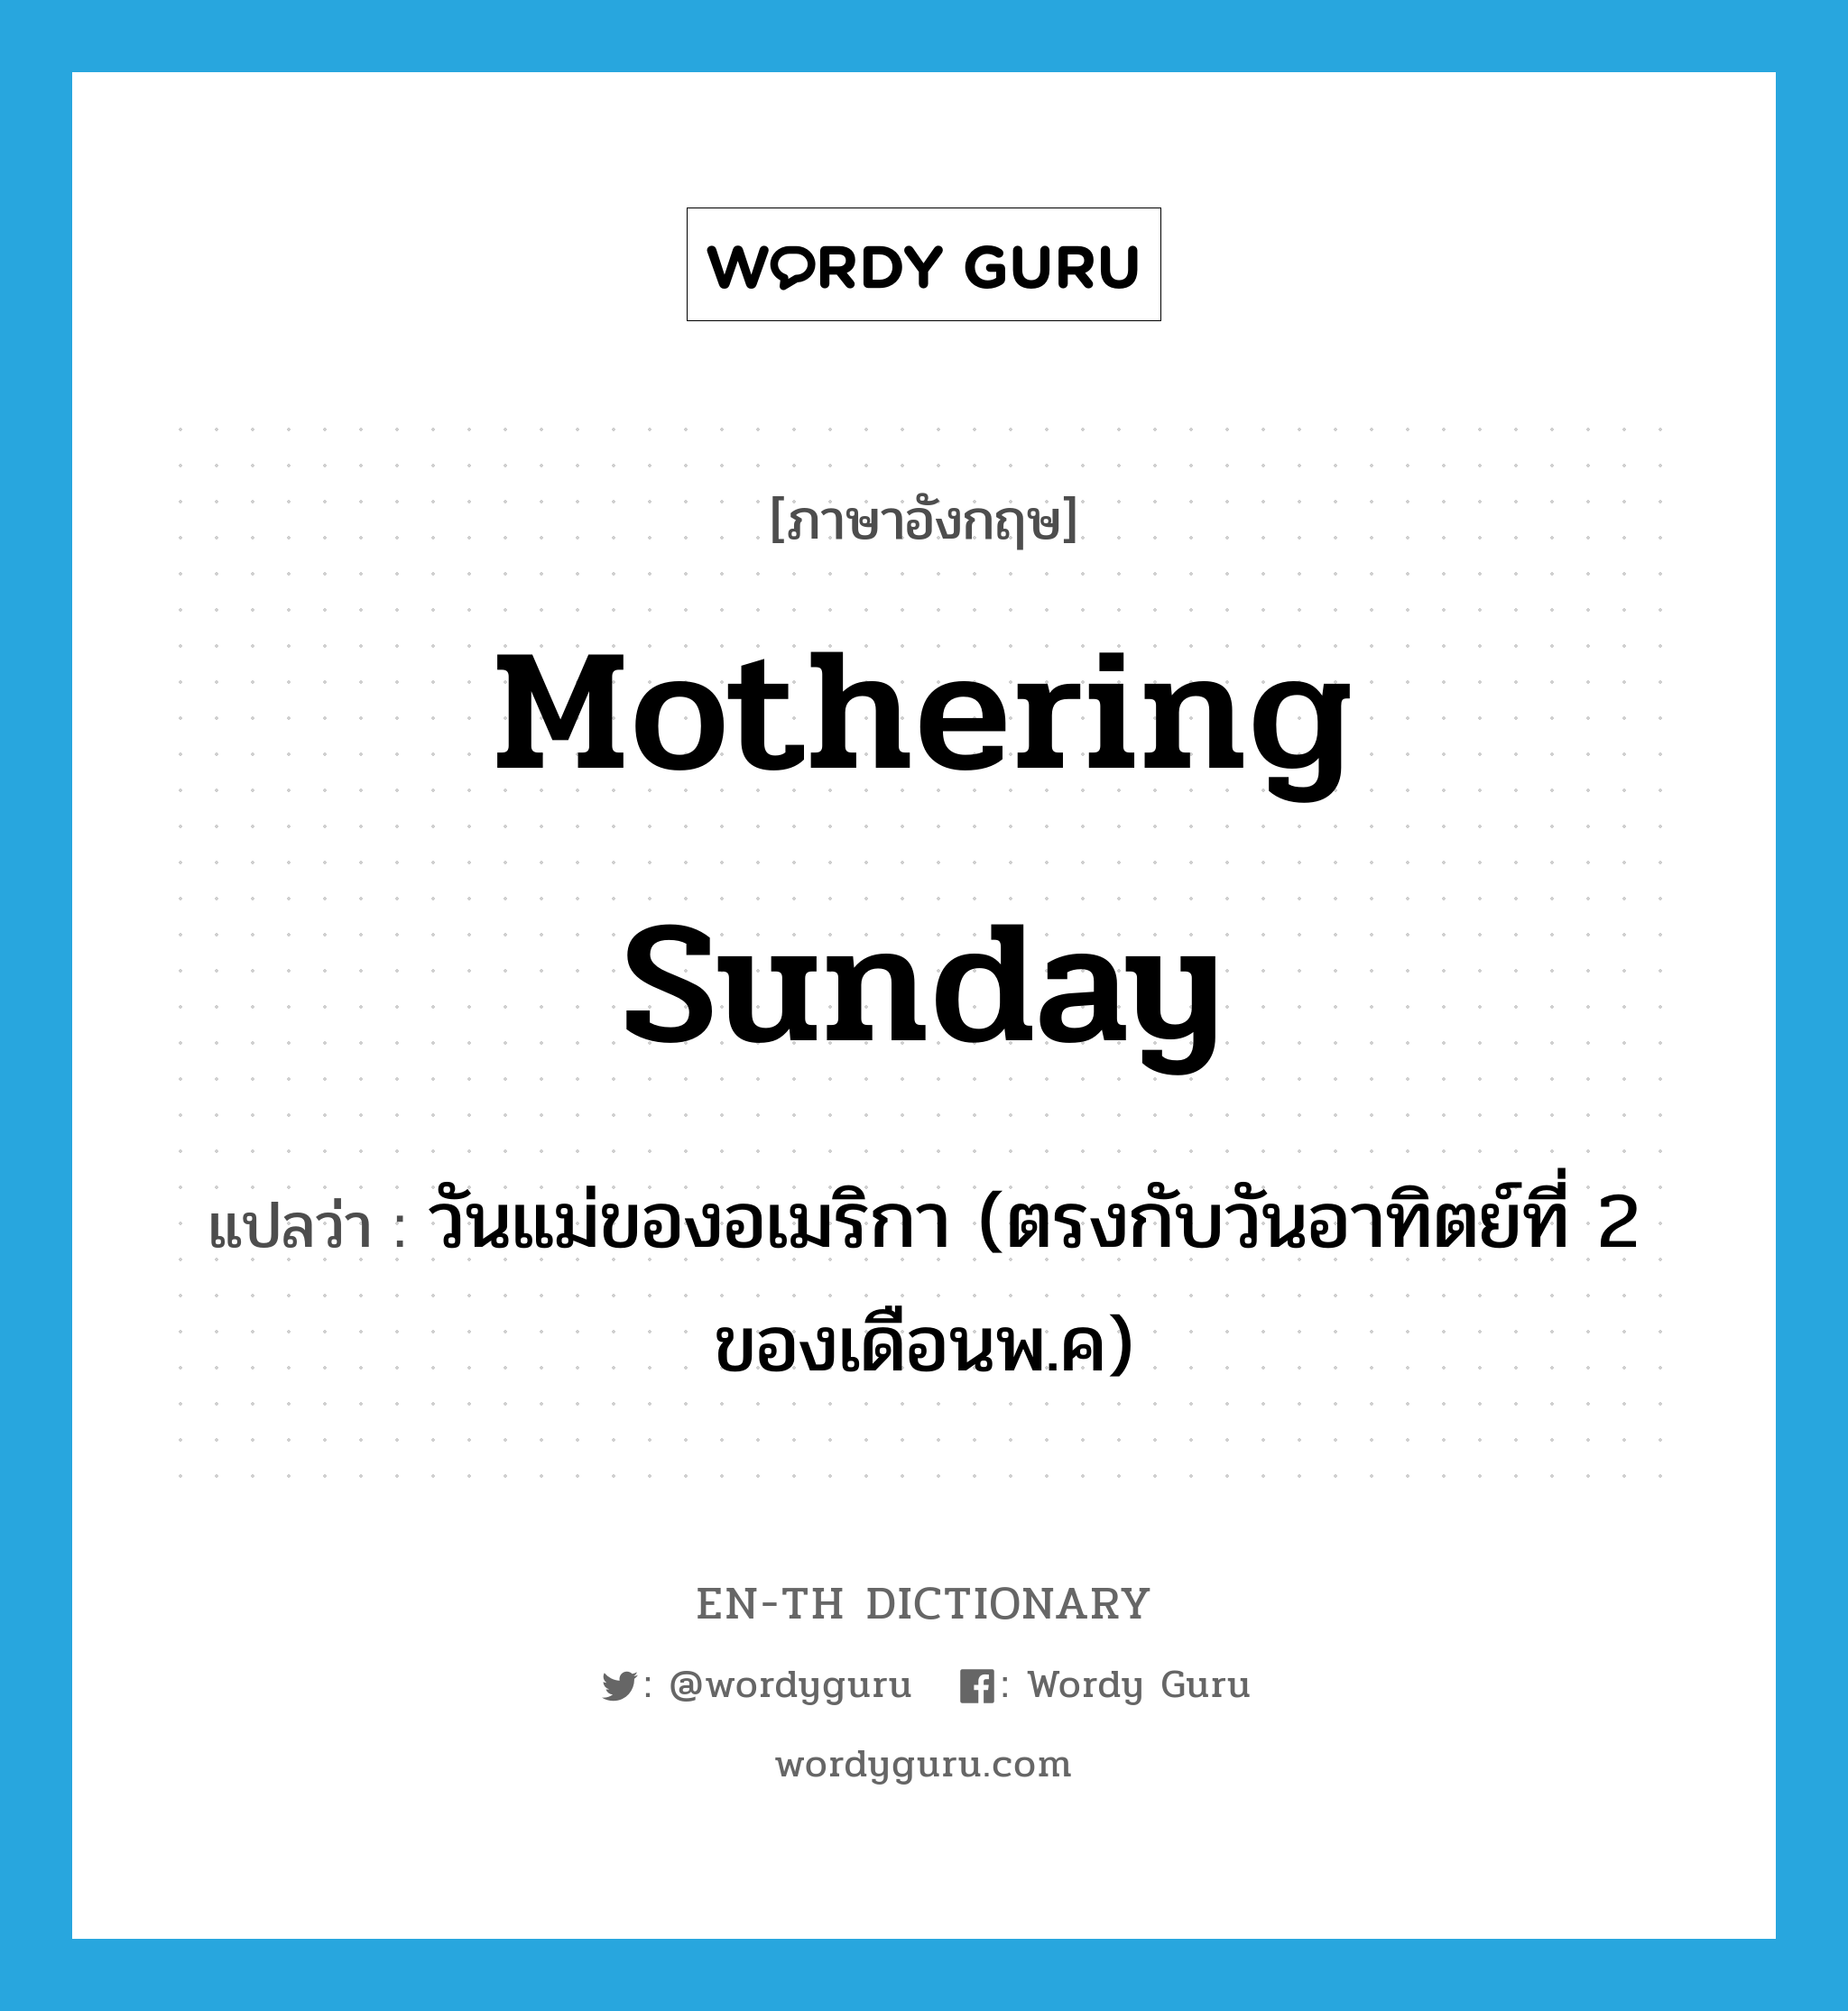 วันแม่ของอเมริกา (ตรงกับวันอาทิตย์ที่ 2 ของเดือนพ.ค) ภาษาอังกฤษ?, คำศัพท์ภาษาอังกฤษ วันแม่ของอเมริกา (ตรงกับวันอาทิตย์ที่ 2 ของเดือนพ.ค) แปลว่า Mothering Sunday ประเภท N หมวด N